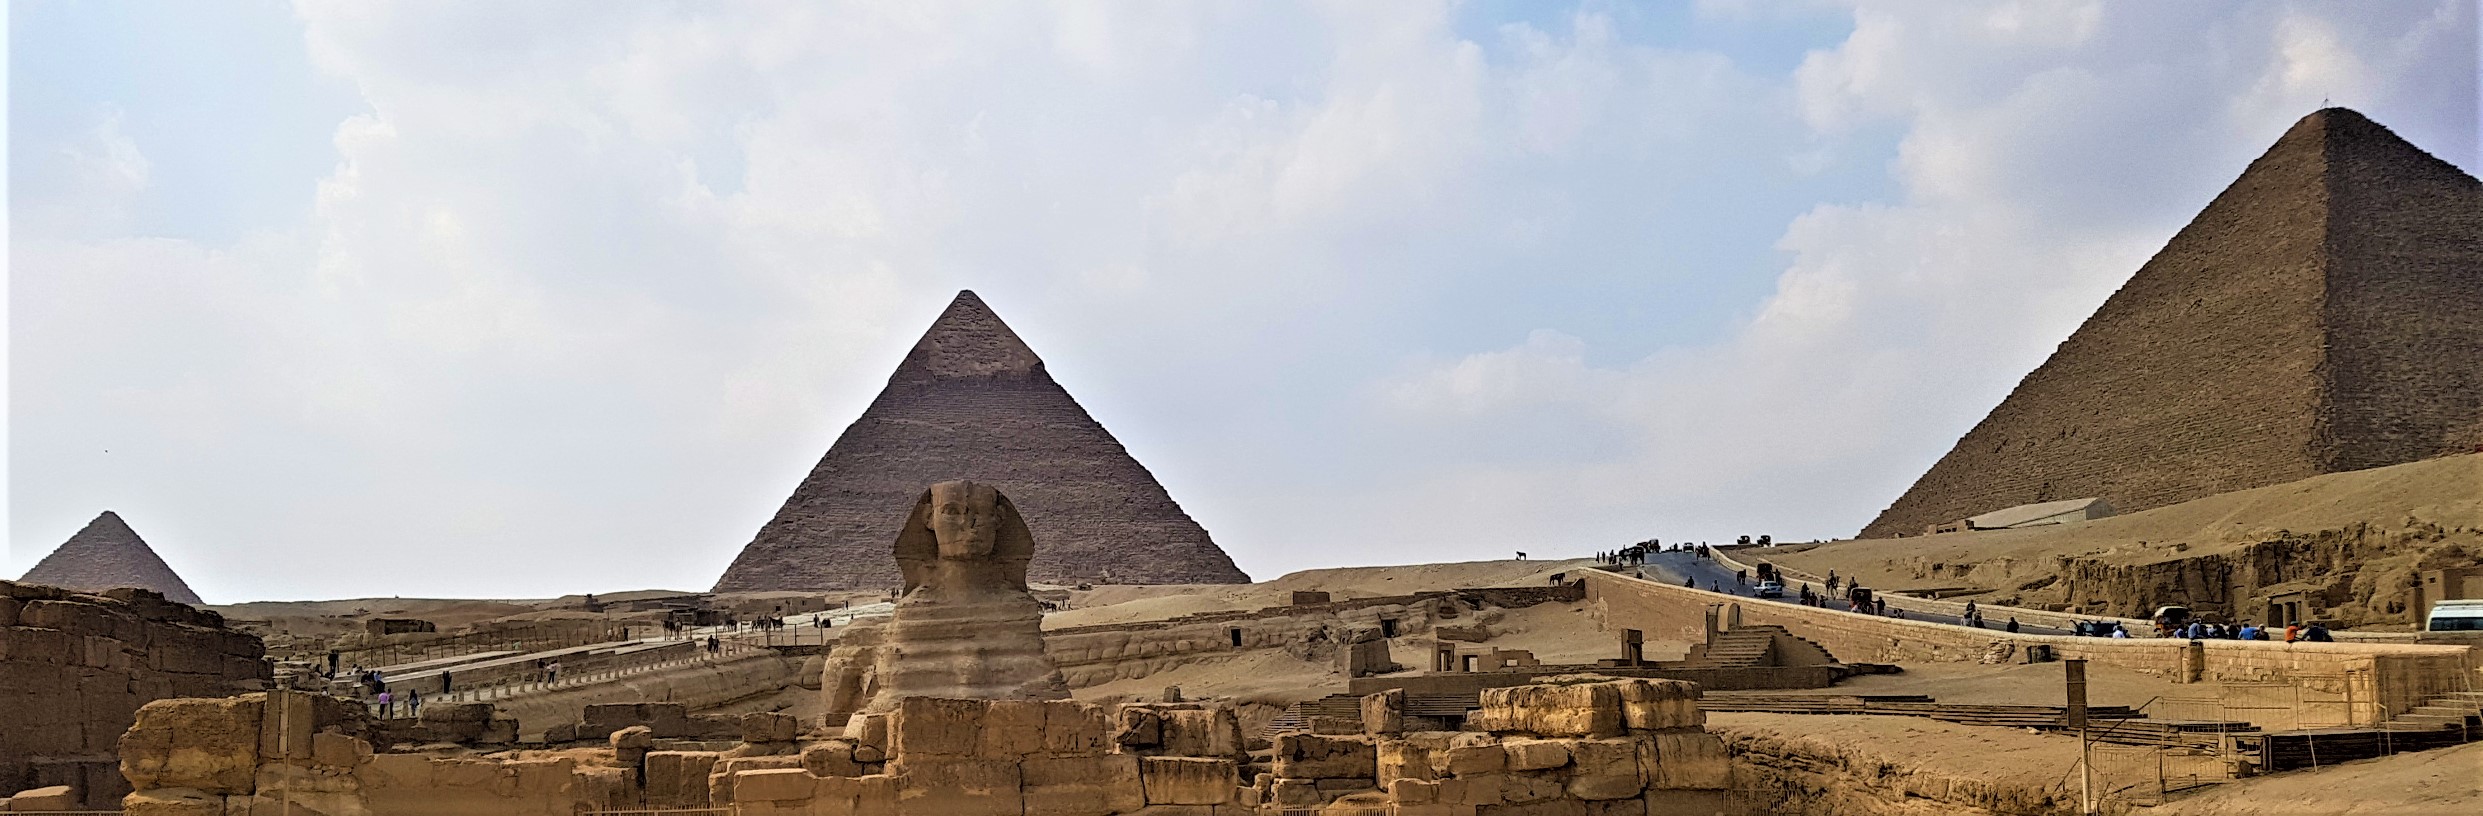 EGYPT: RISE OF THE WINGED KHEPER TOUR | Khemitology.com